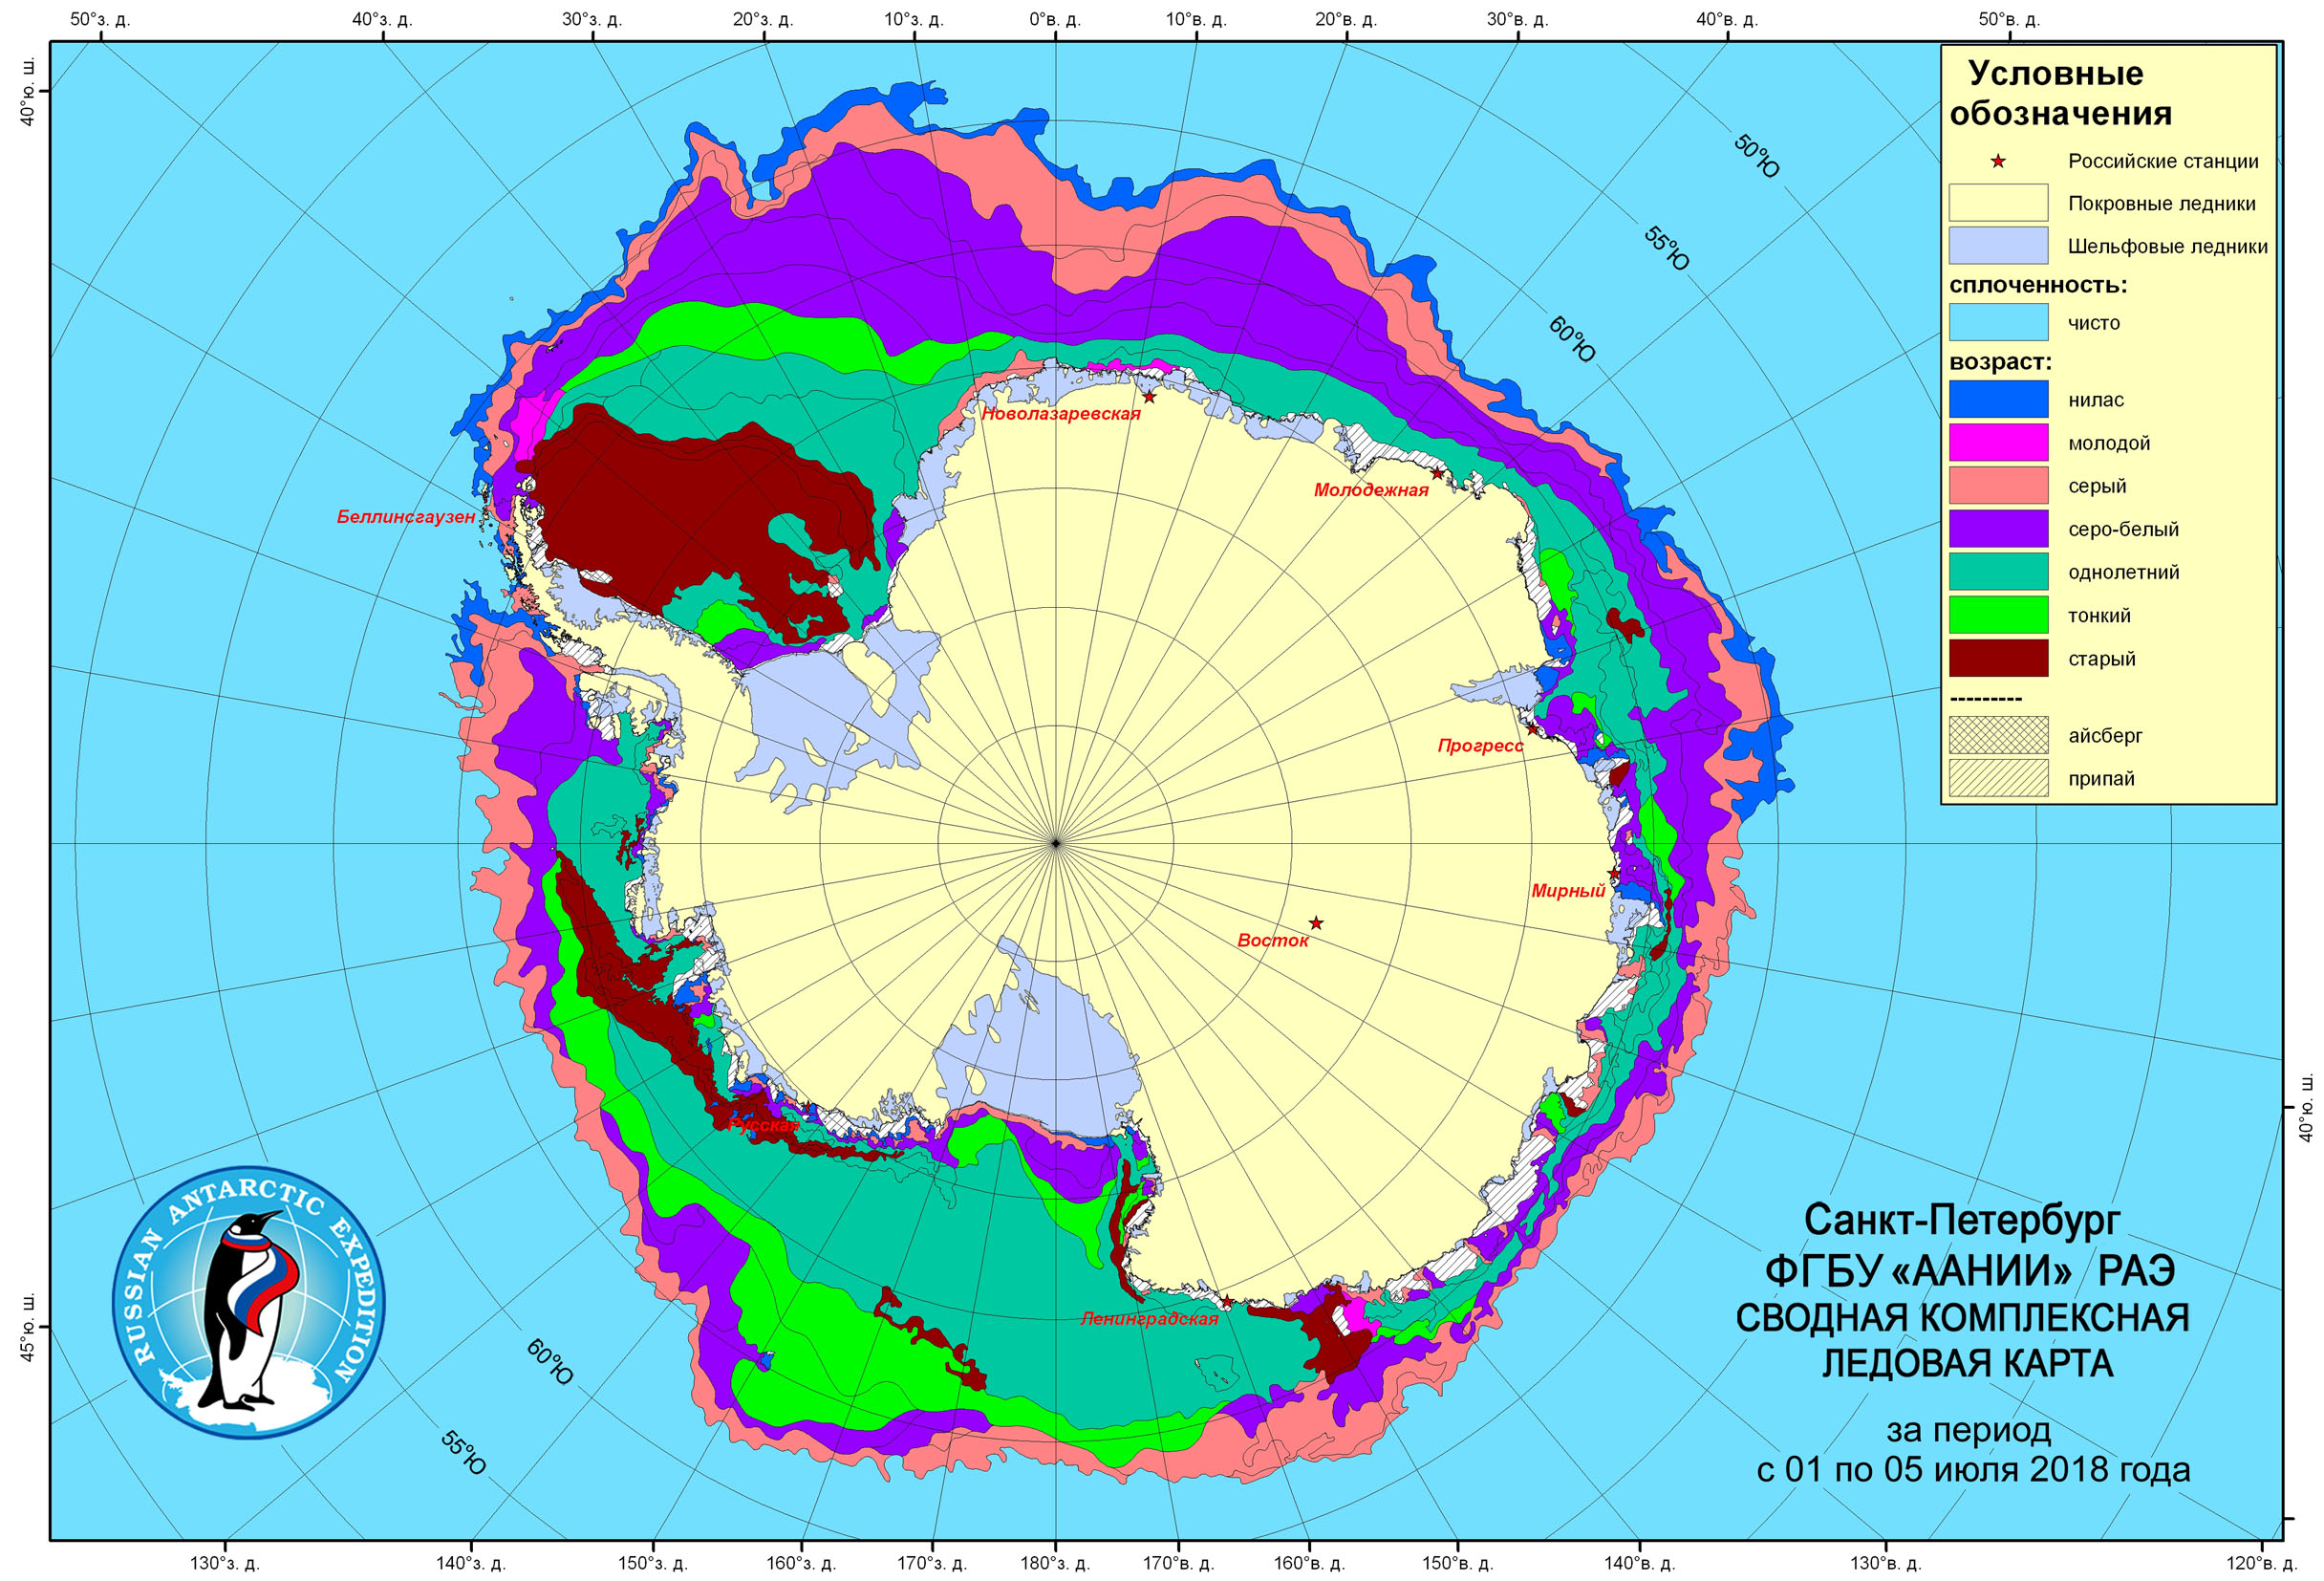 Ледовые карты. Ледовая карта. Карта ледовой обстановки. Анализ ледовой обстановки. Карты ледовой обстановки в Арктике.